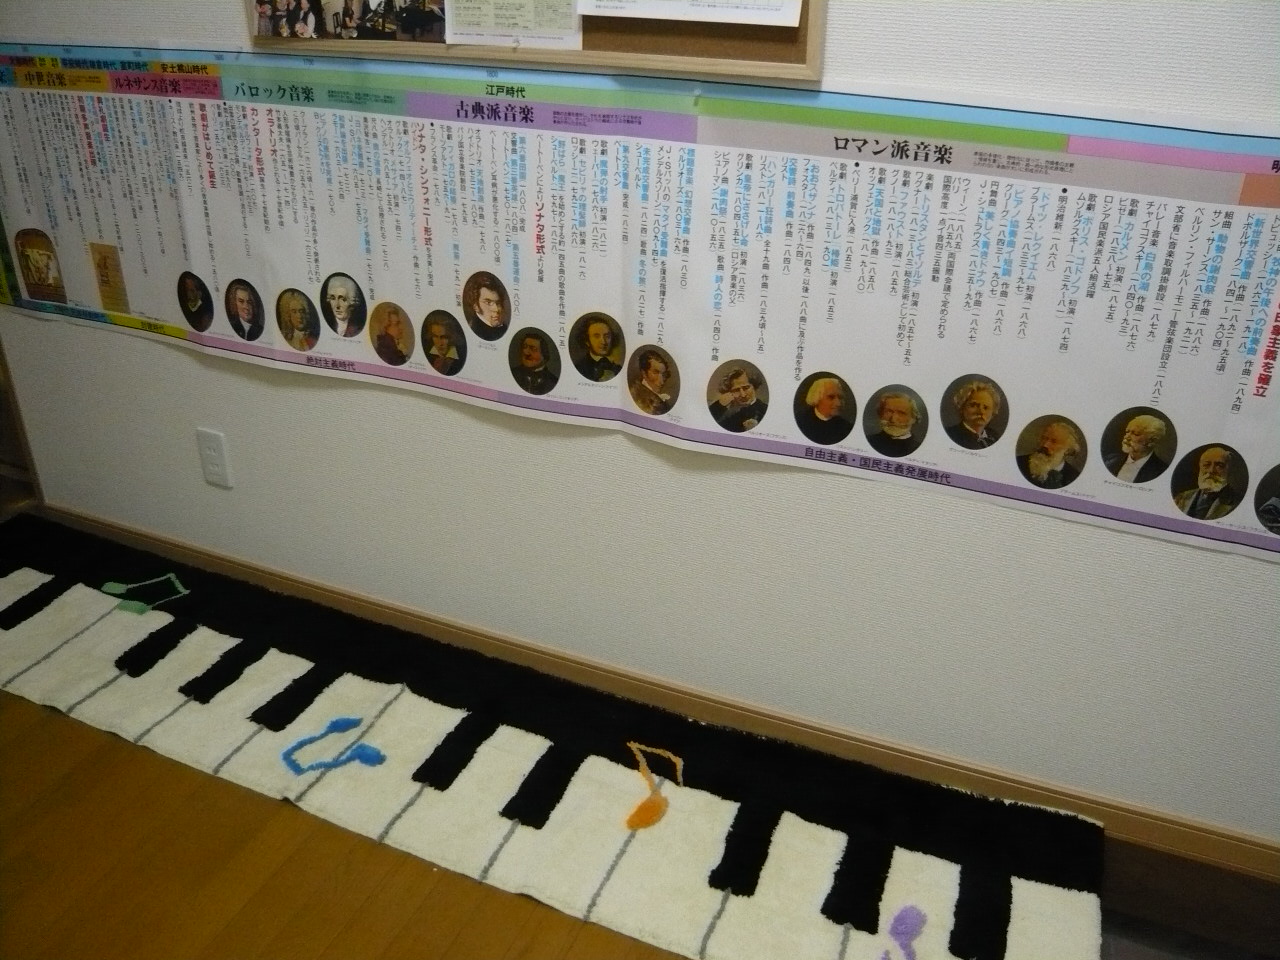 鍵盤マット | 指宿ミューズピアノ教室 | 指宿ミューズピアノ教室